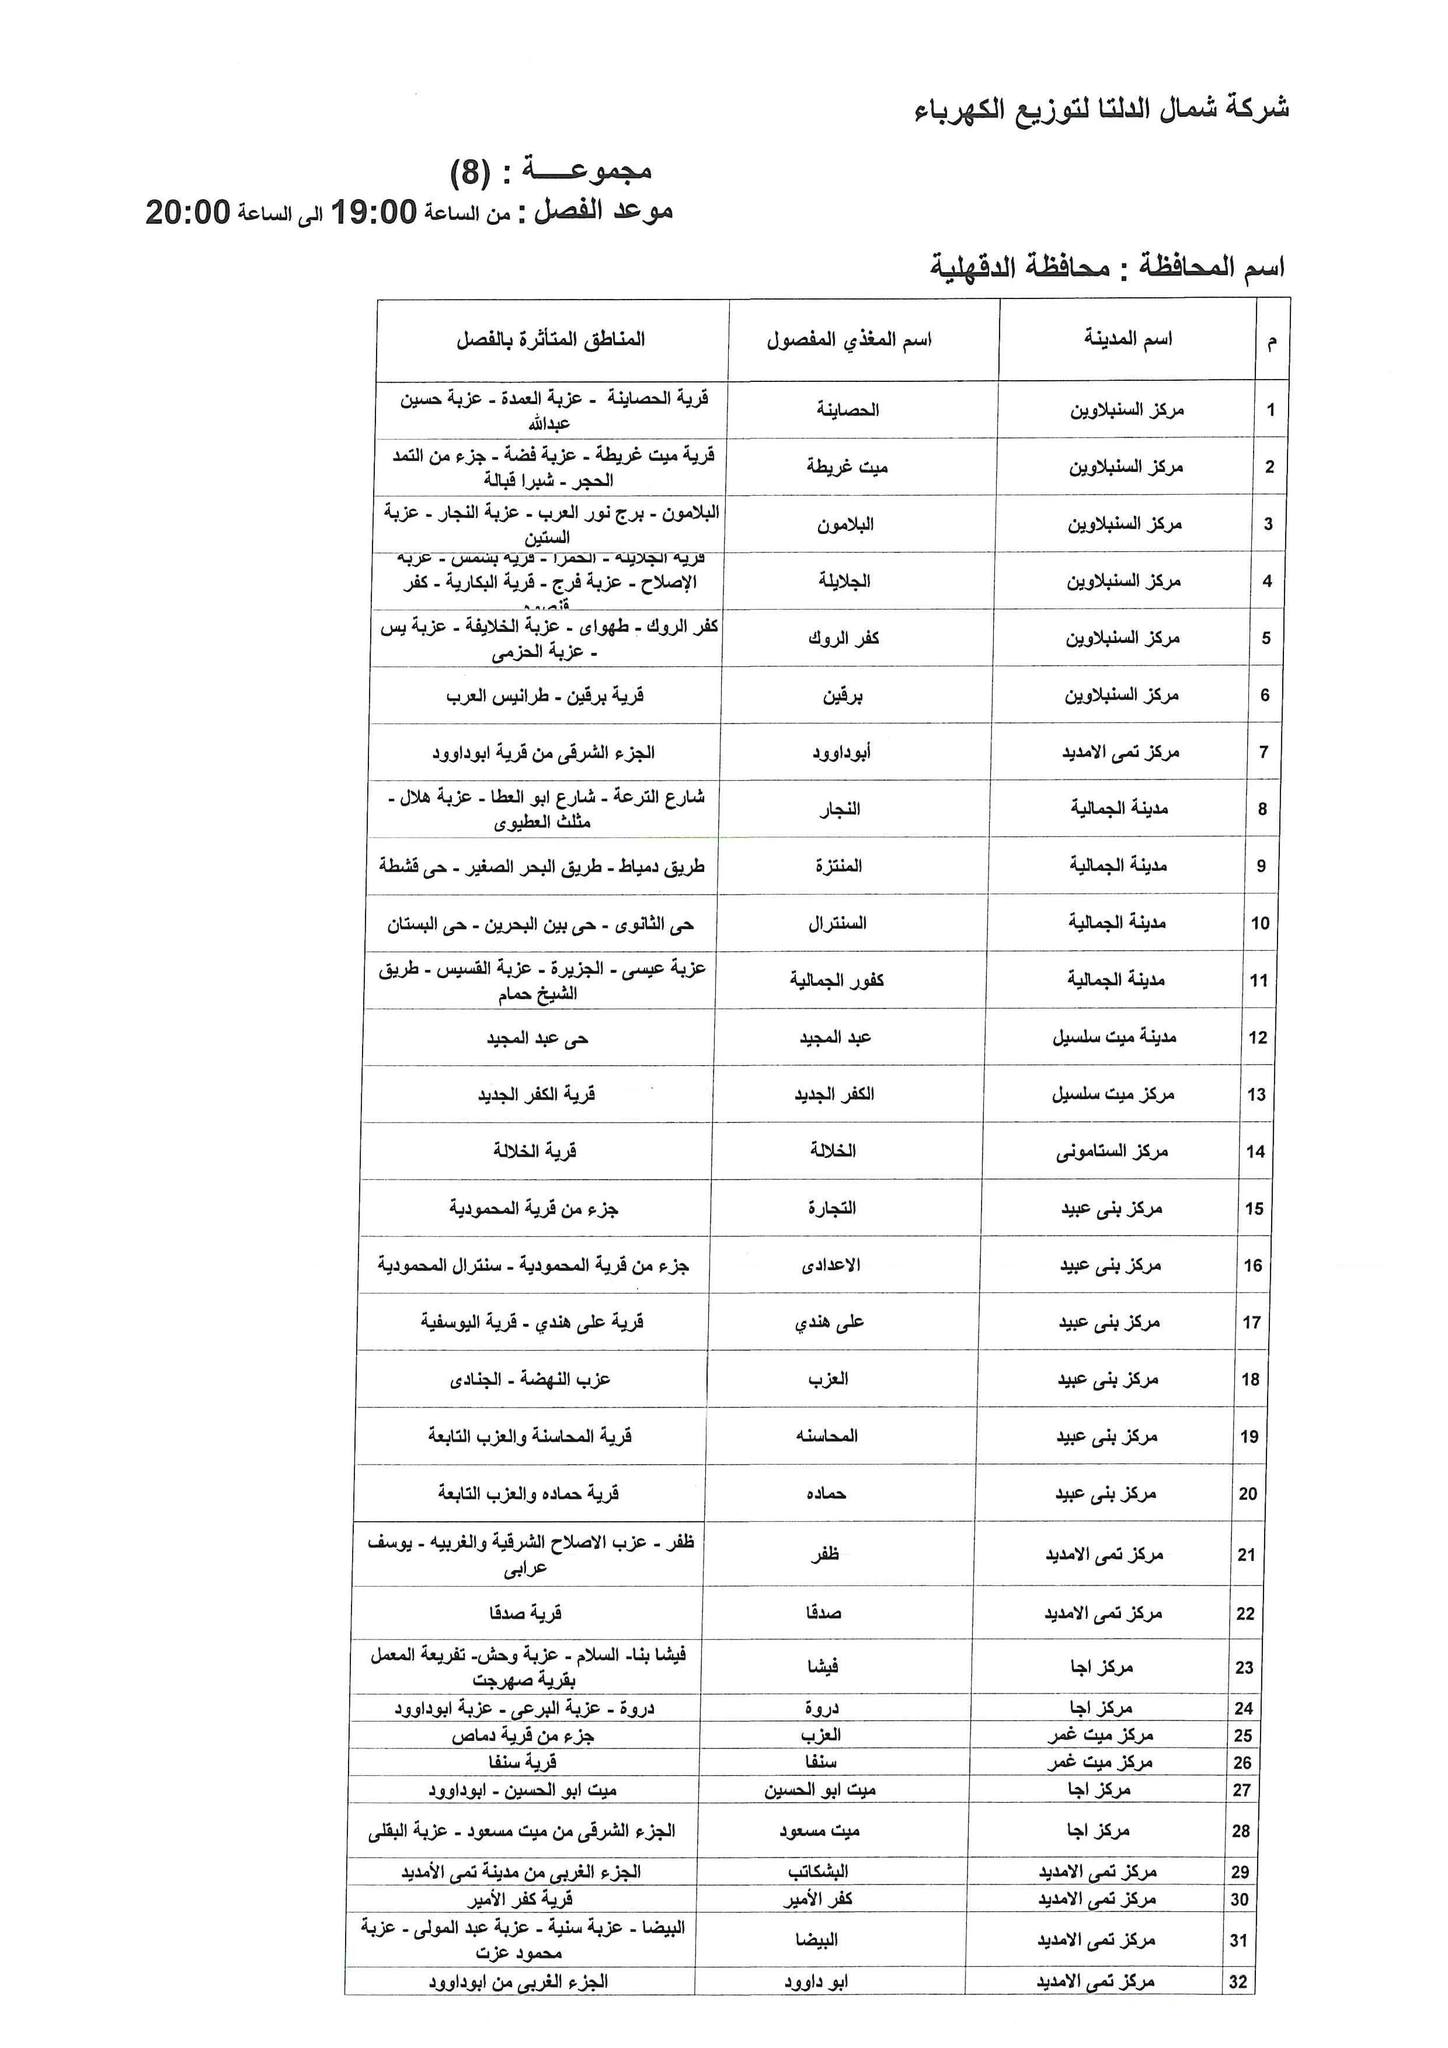 الإعلان عن خطة تخفيف أحمال الكهرباء فى محافظة الدقهلية 14